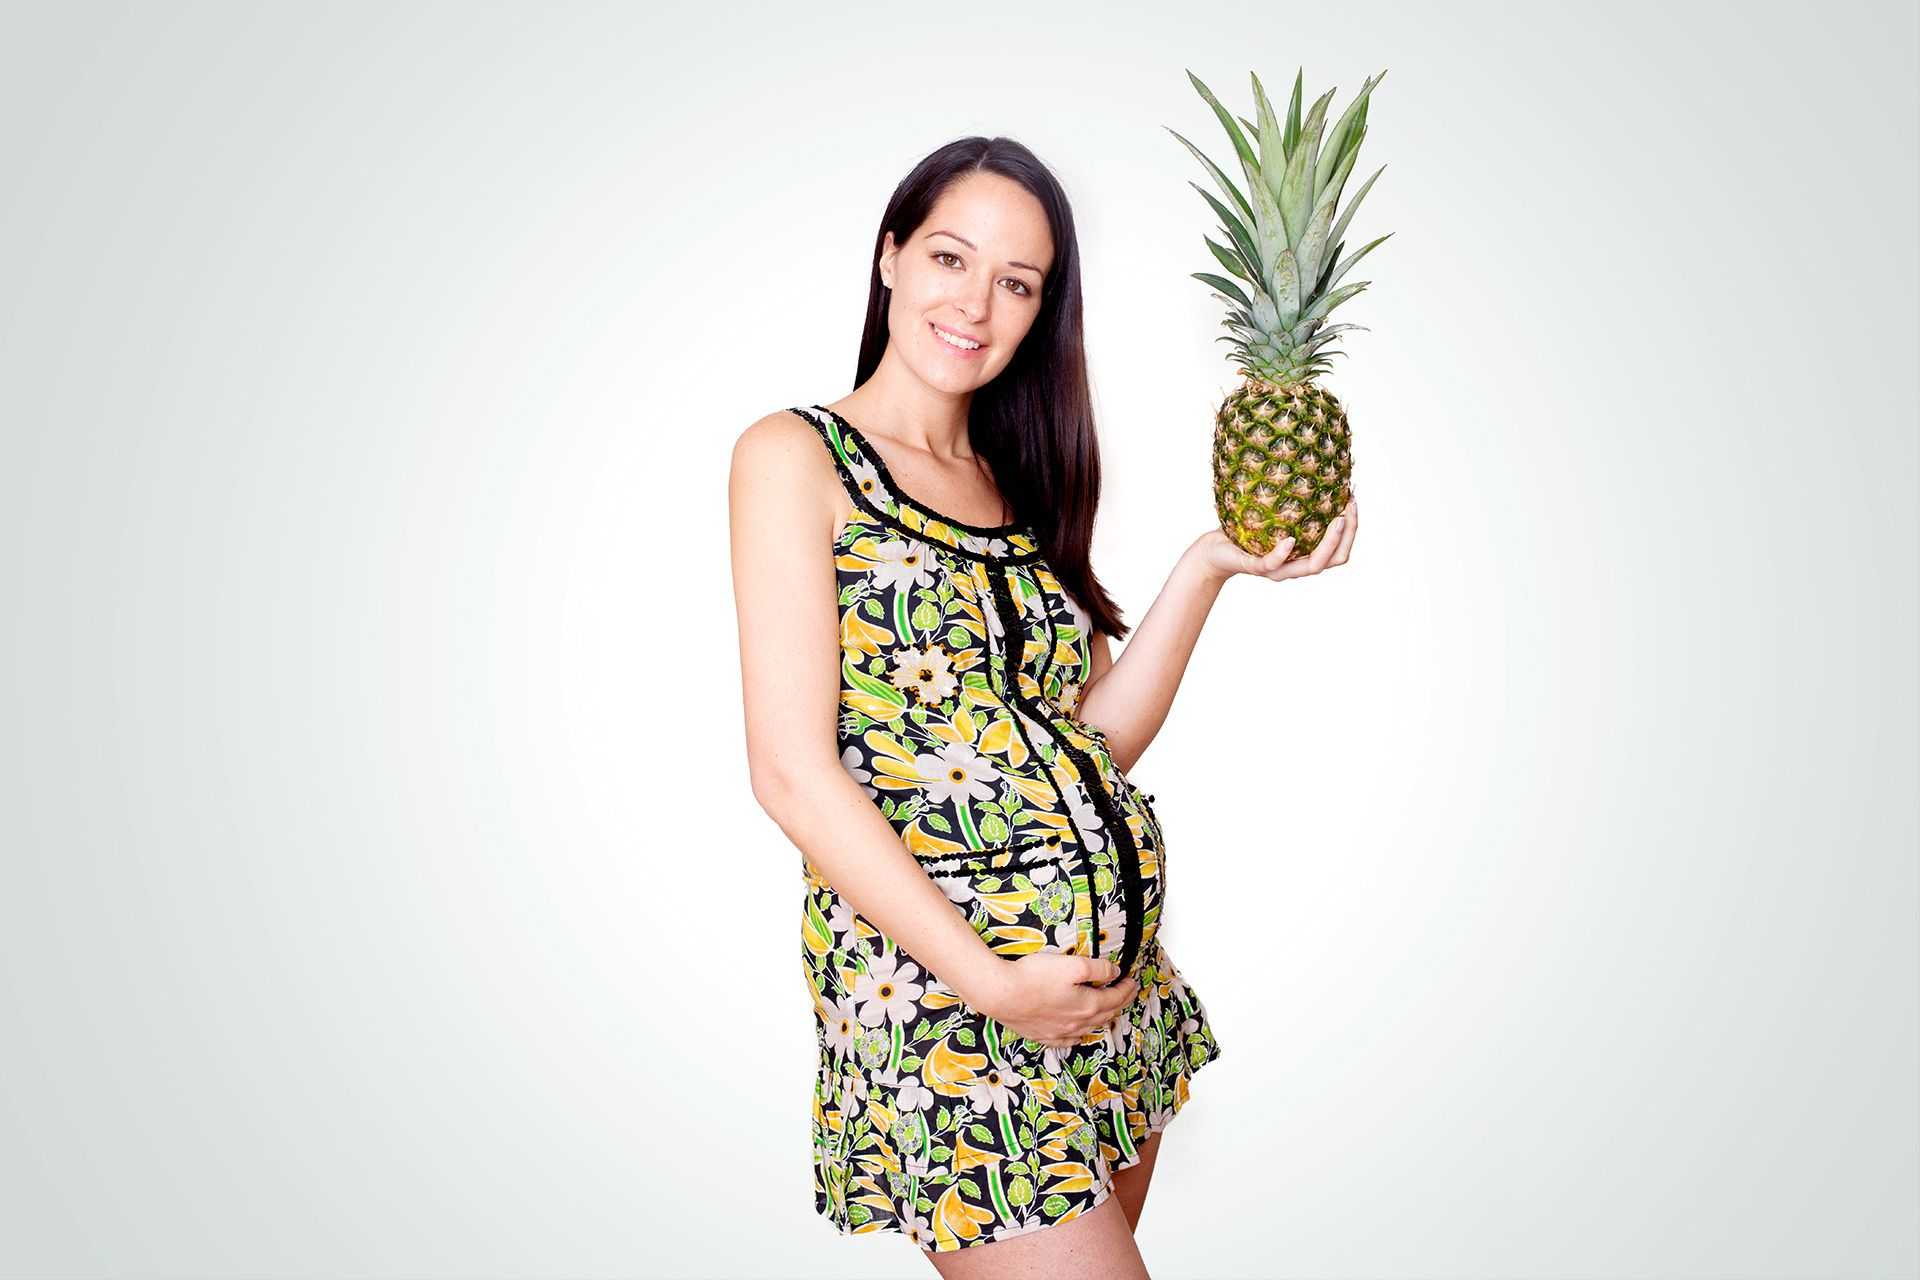 Вред и польза ананаса при беременности В каком количестве можно кушать ананас будущей маме Когда от ананаса лучше отказаться 5 правил покупки ананаса